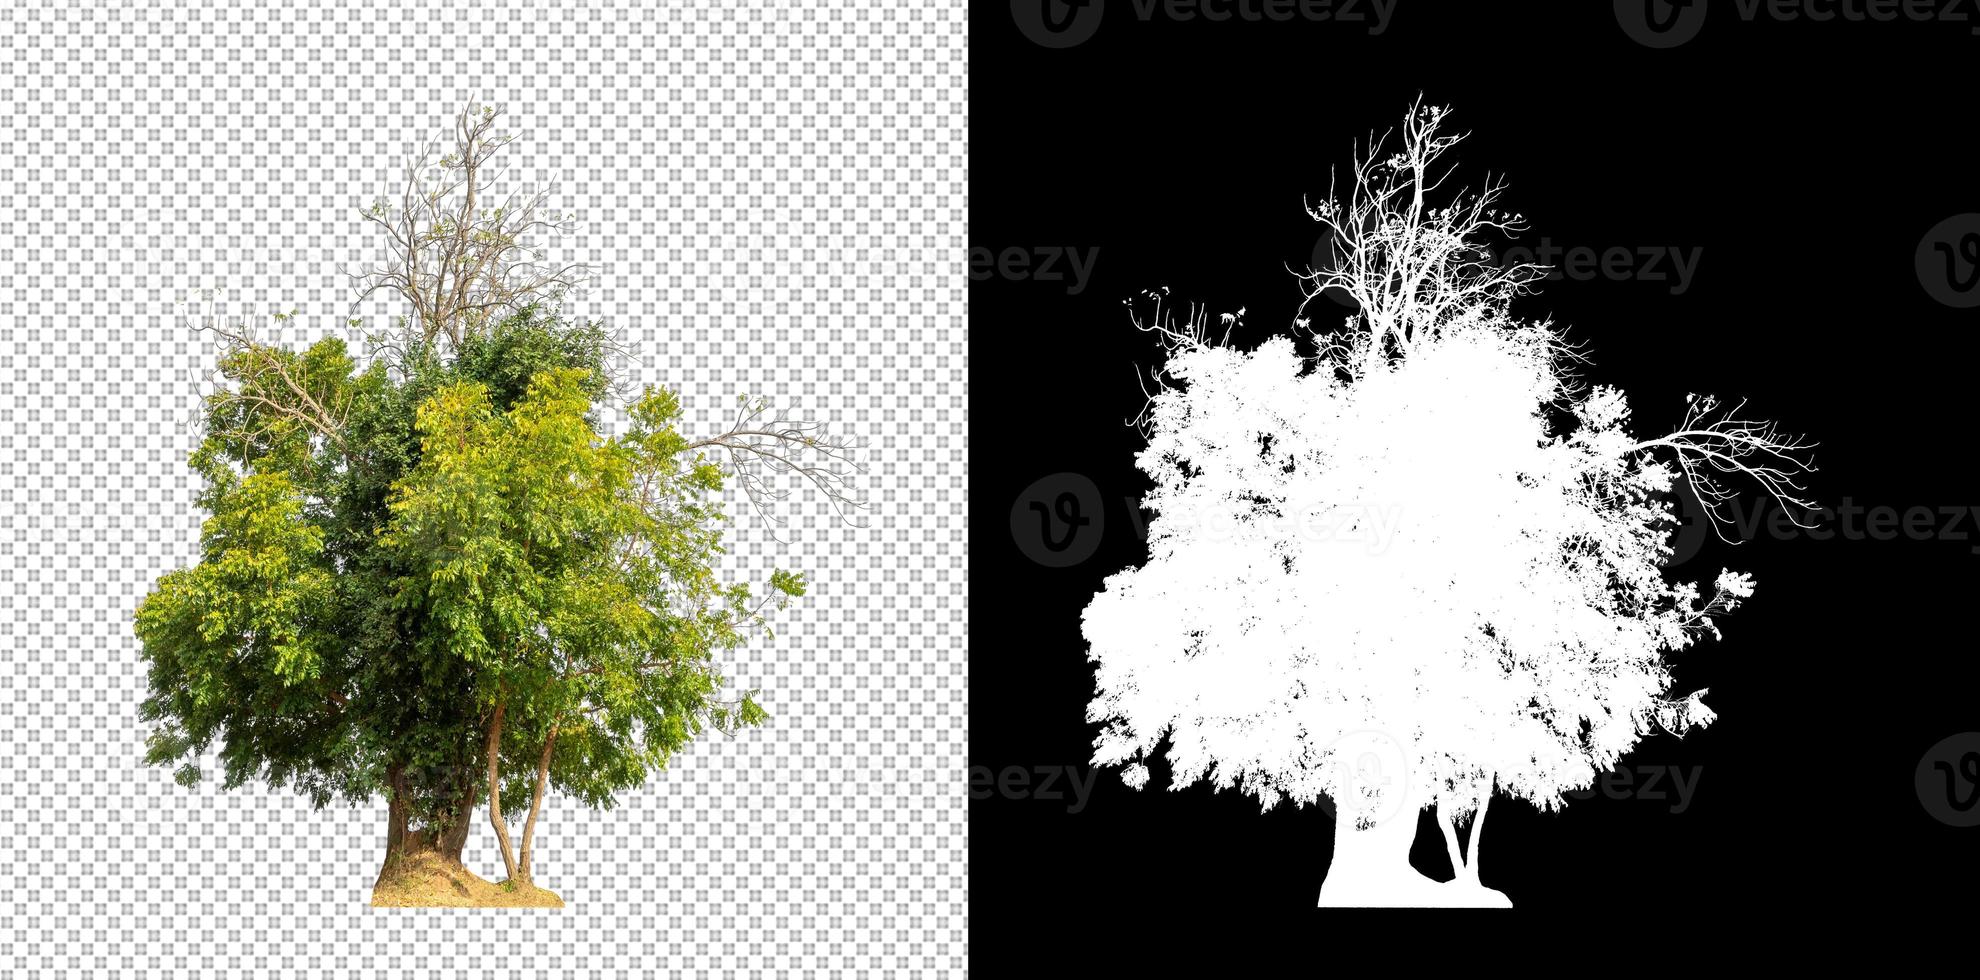 árvore isolada em fundo transparente com traçado de recorte e canal alfa foto